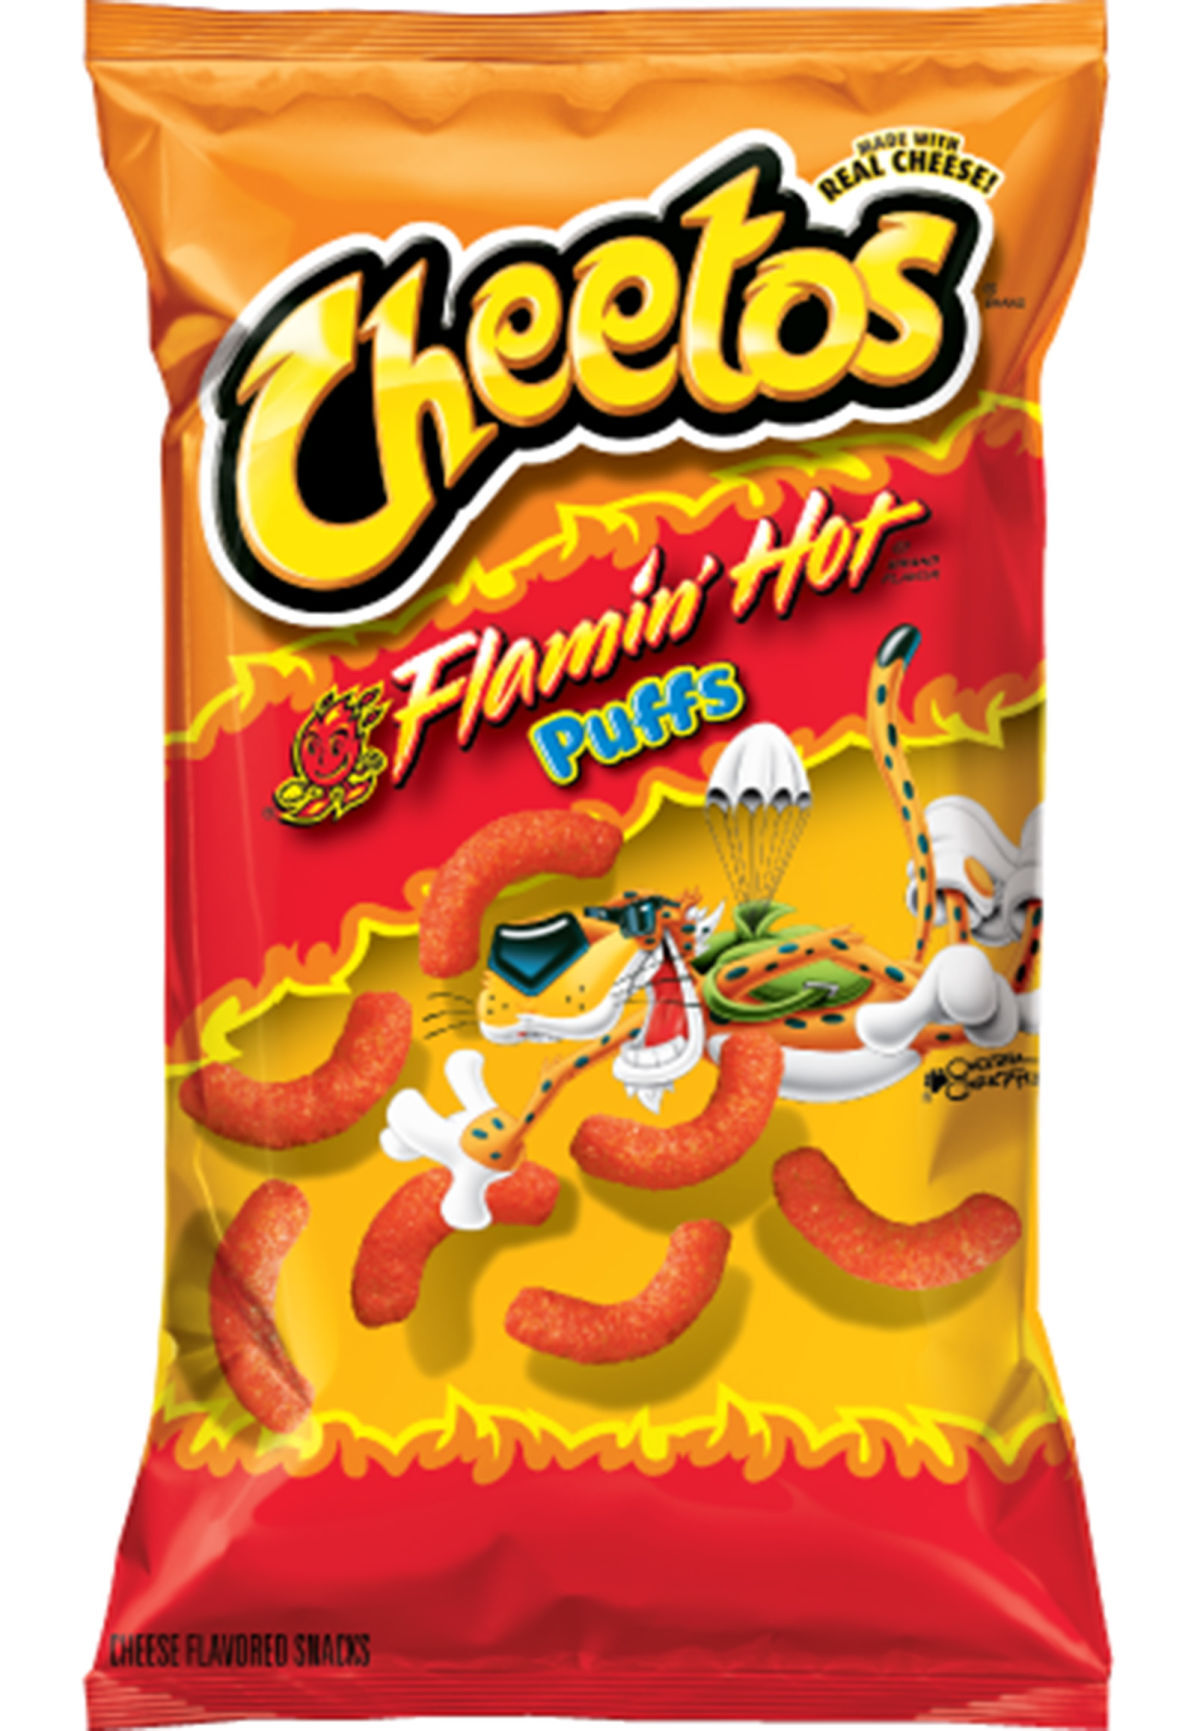 1995 Frito Lay Super Grab Chester's Flamin' HOT Fries Bag